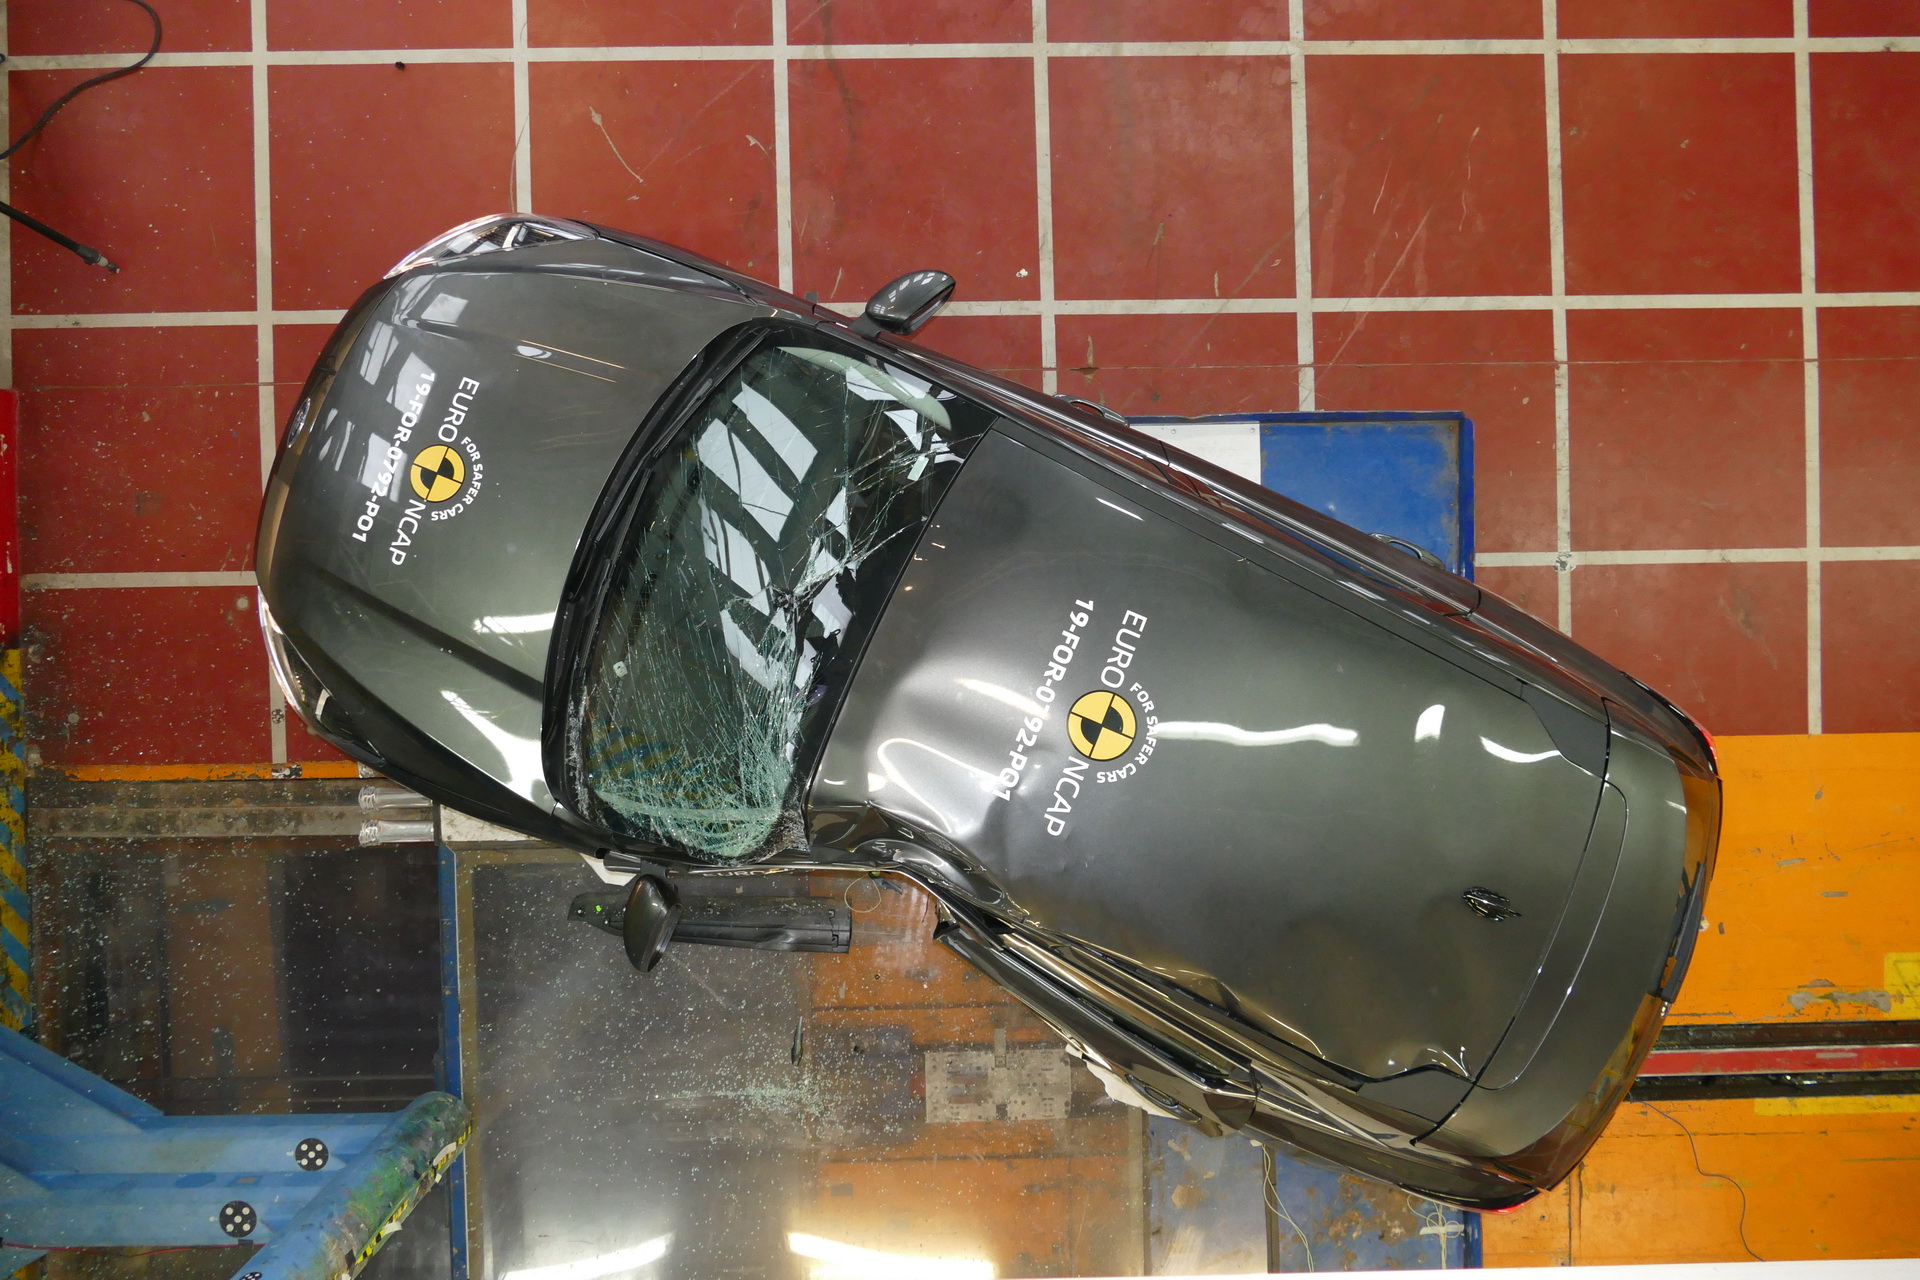 شاهد اختبار السلامة الأوروبية لـ 12 سيارة جديدة بينها تيسلا موديل X وبورش تايكان 48